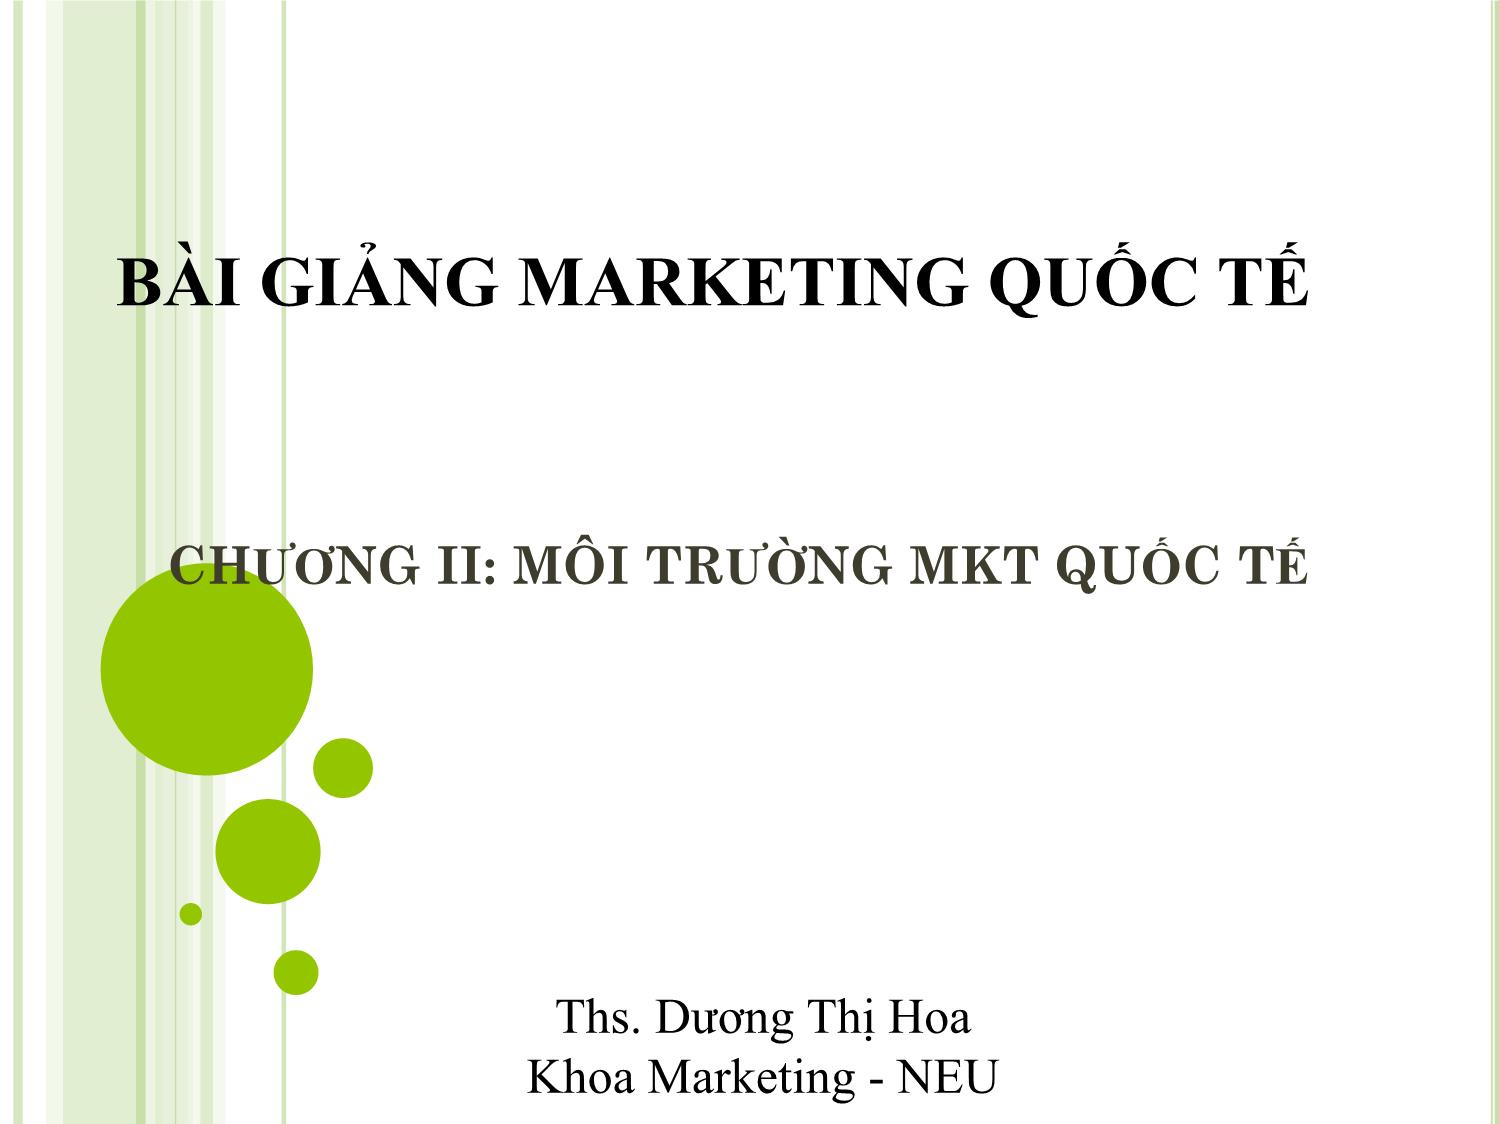 Bài giảng Marketing quốc tế - Chương 2: Môi trường marketing quốc tế - Dương Thị Hoa trang 1